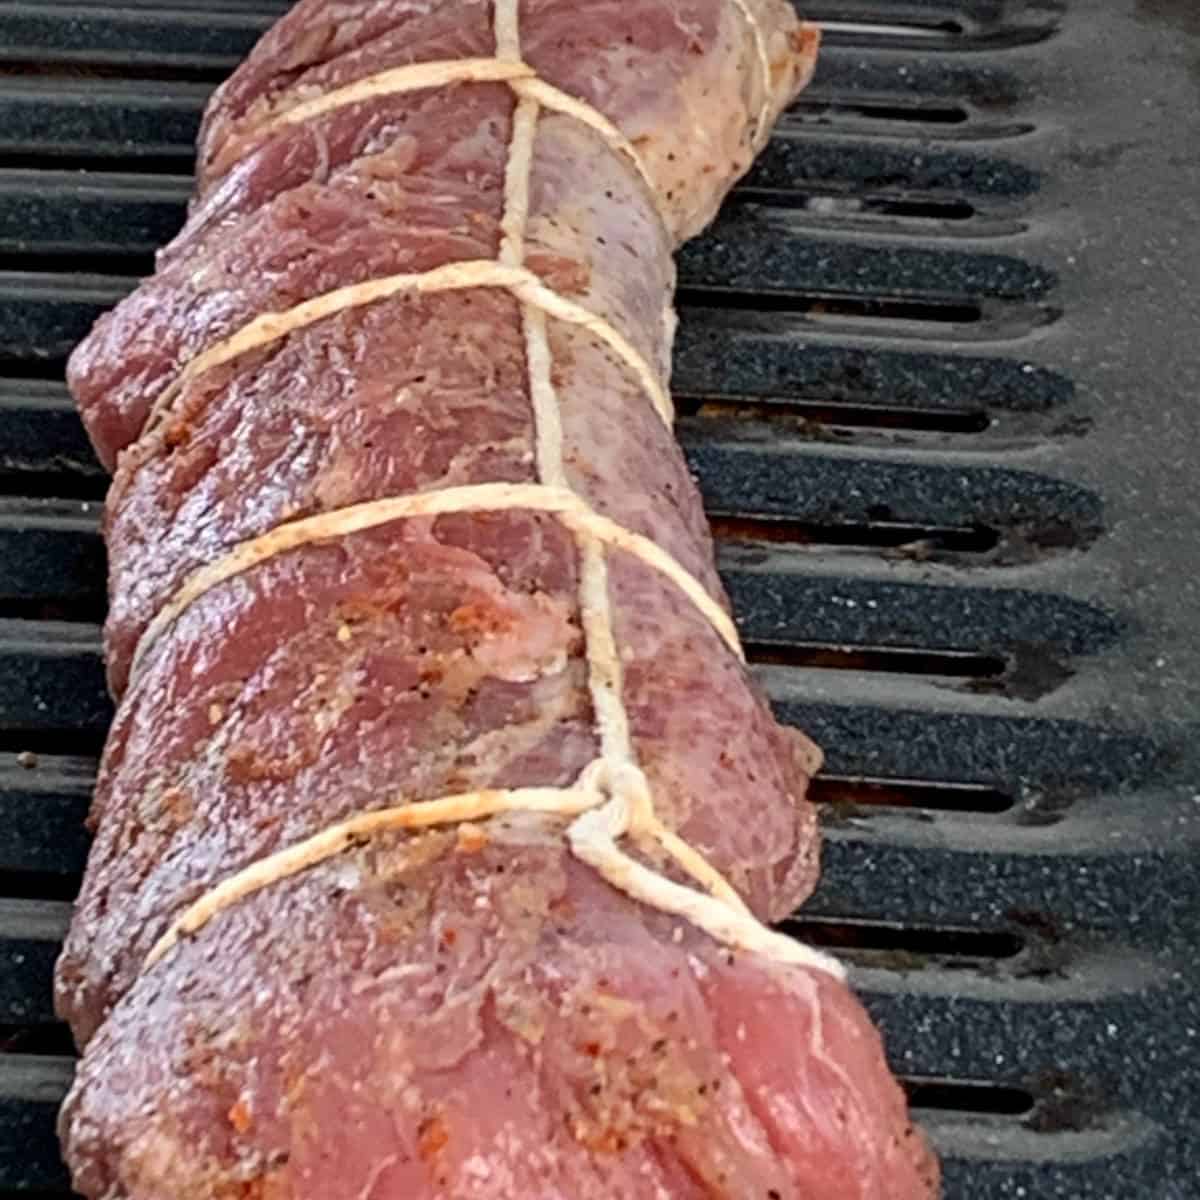 Pork ready to be smoked. 